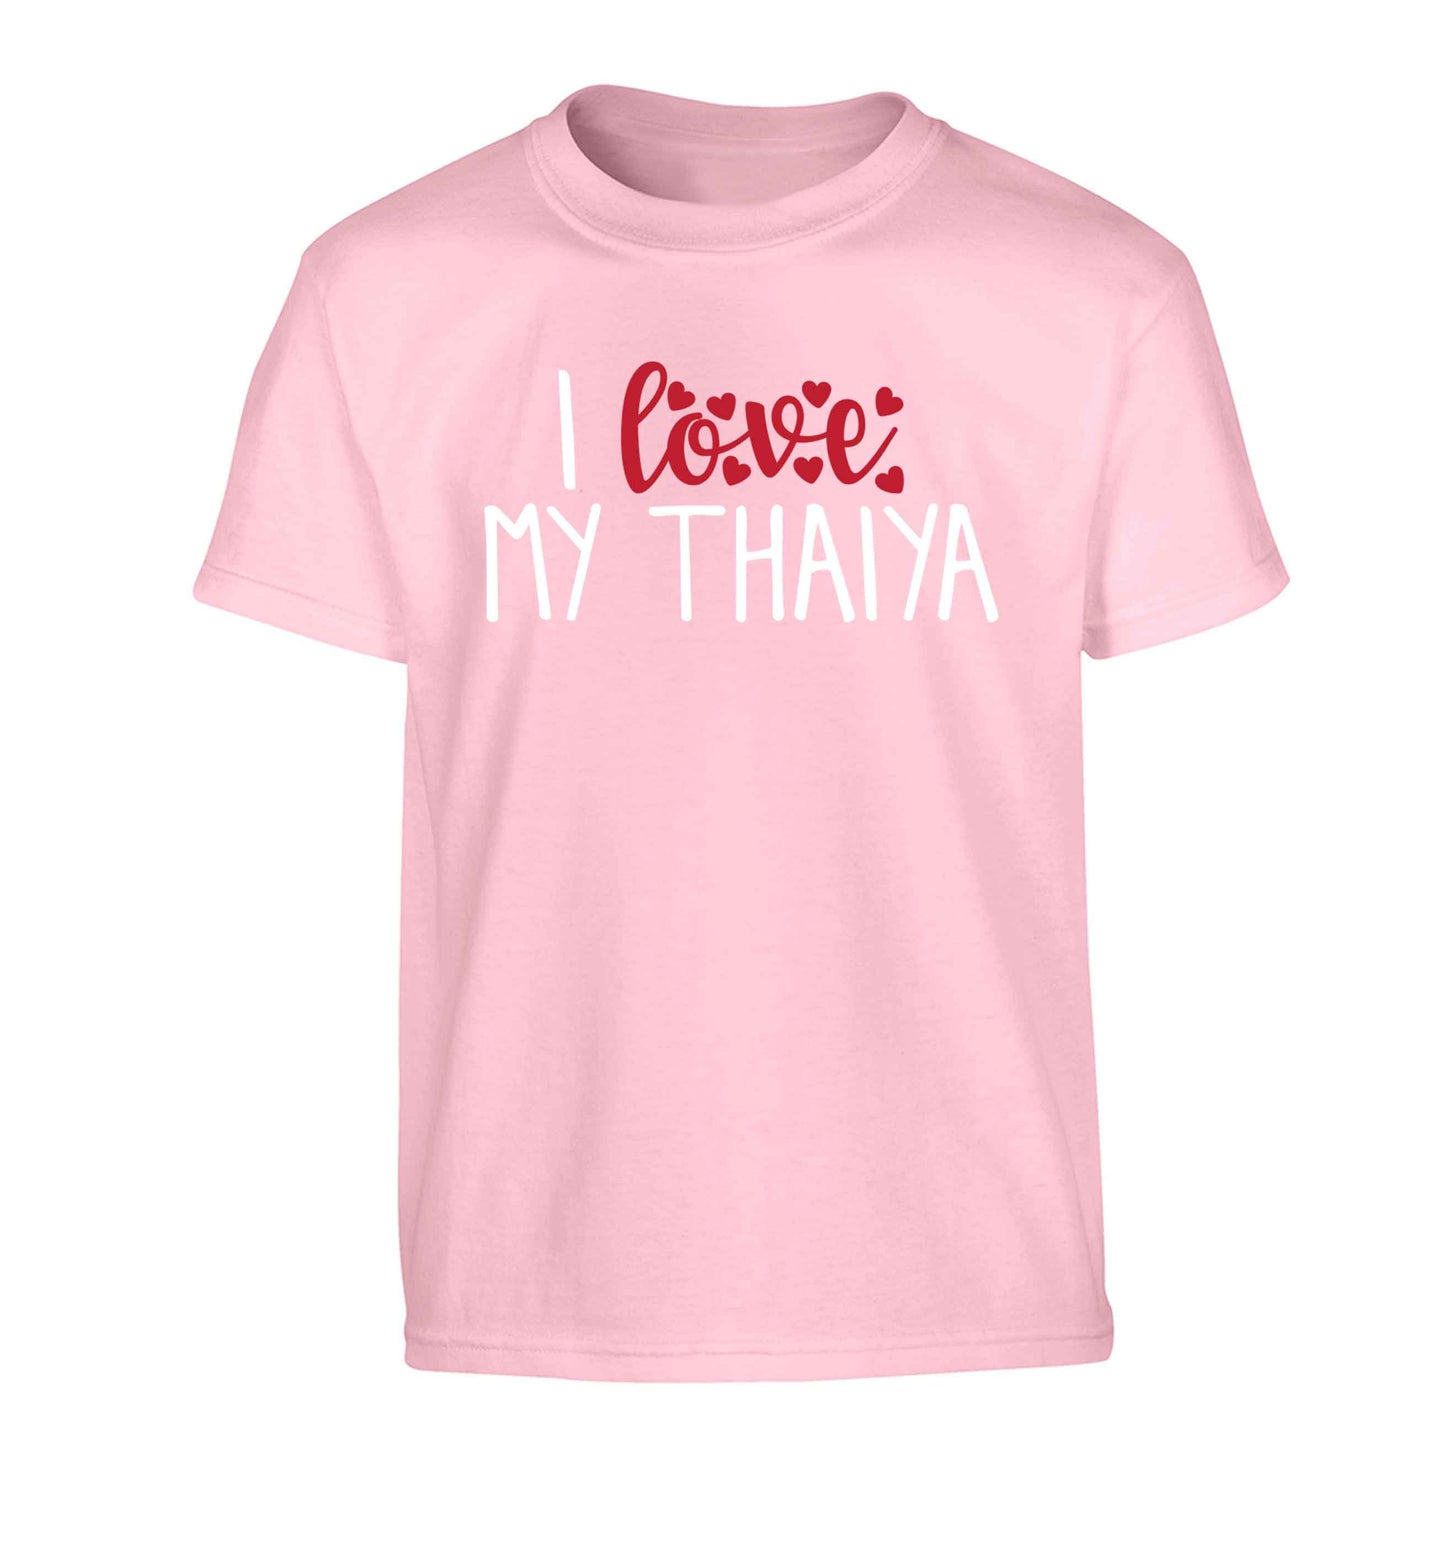 I love my thaiya Children's light pink Tshirt 12-13 Years